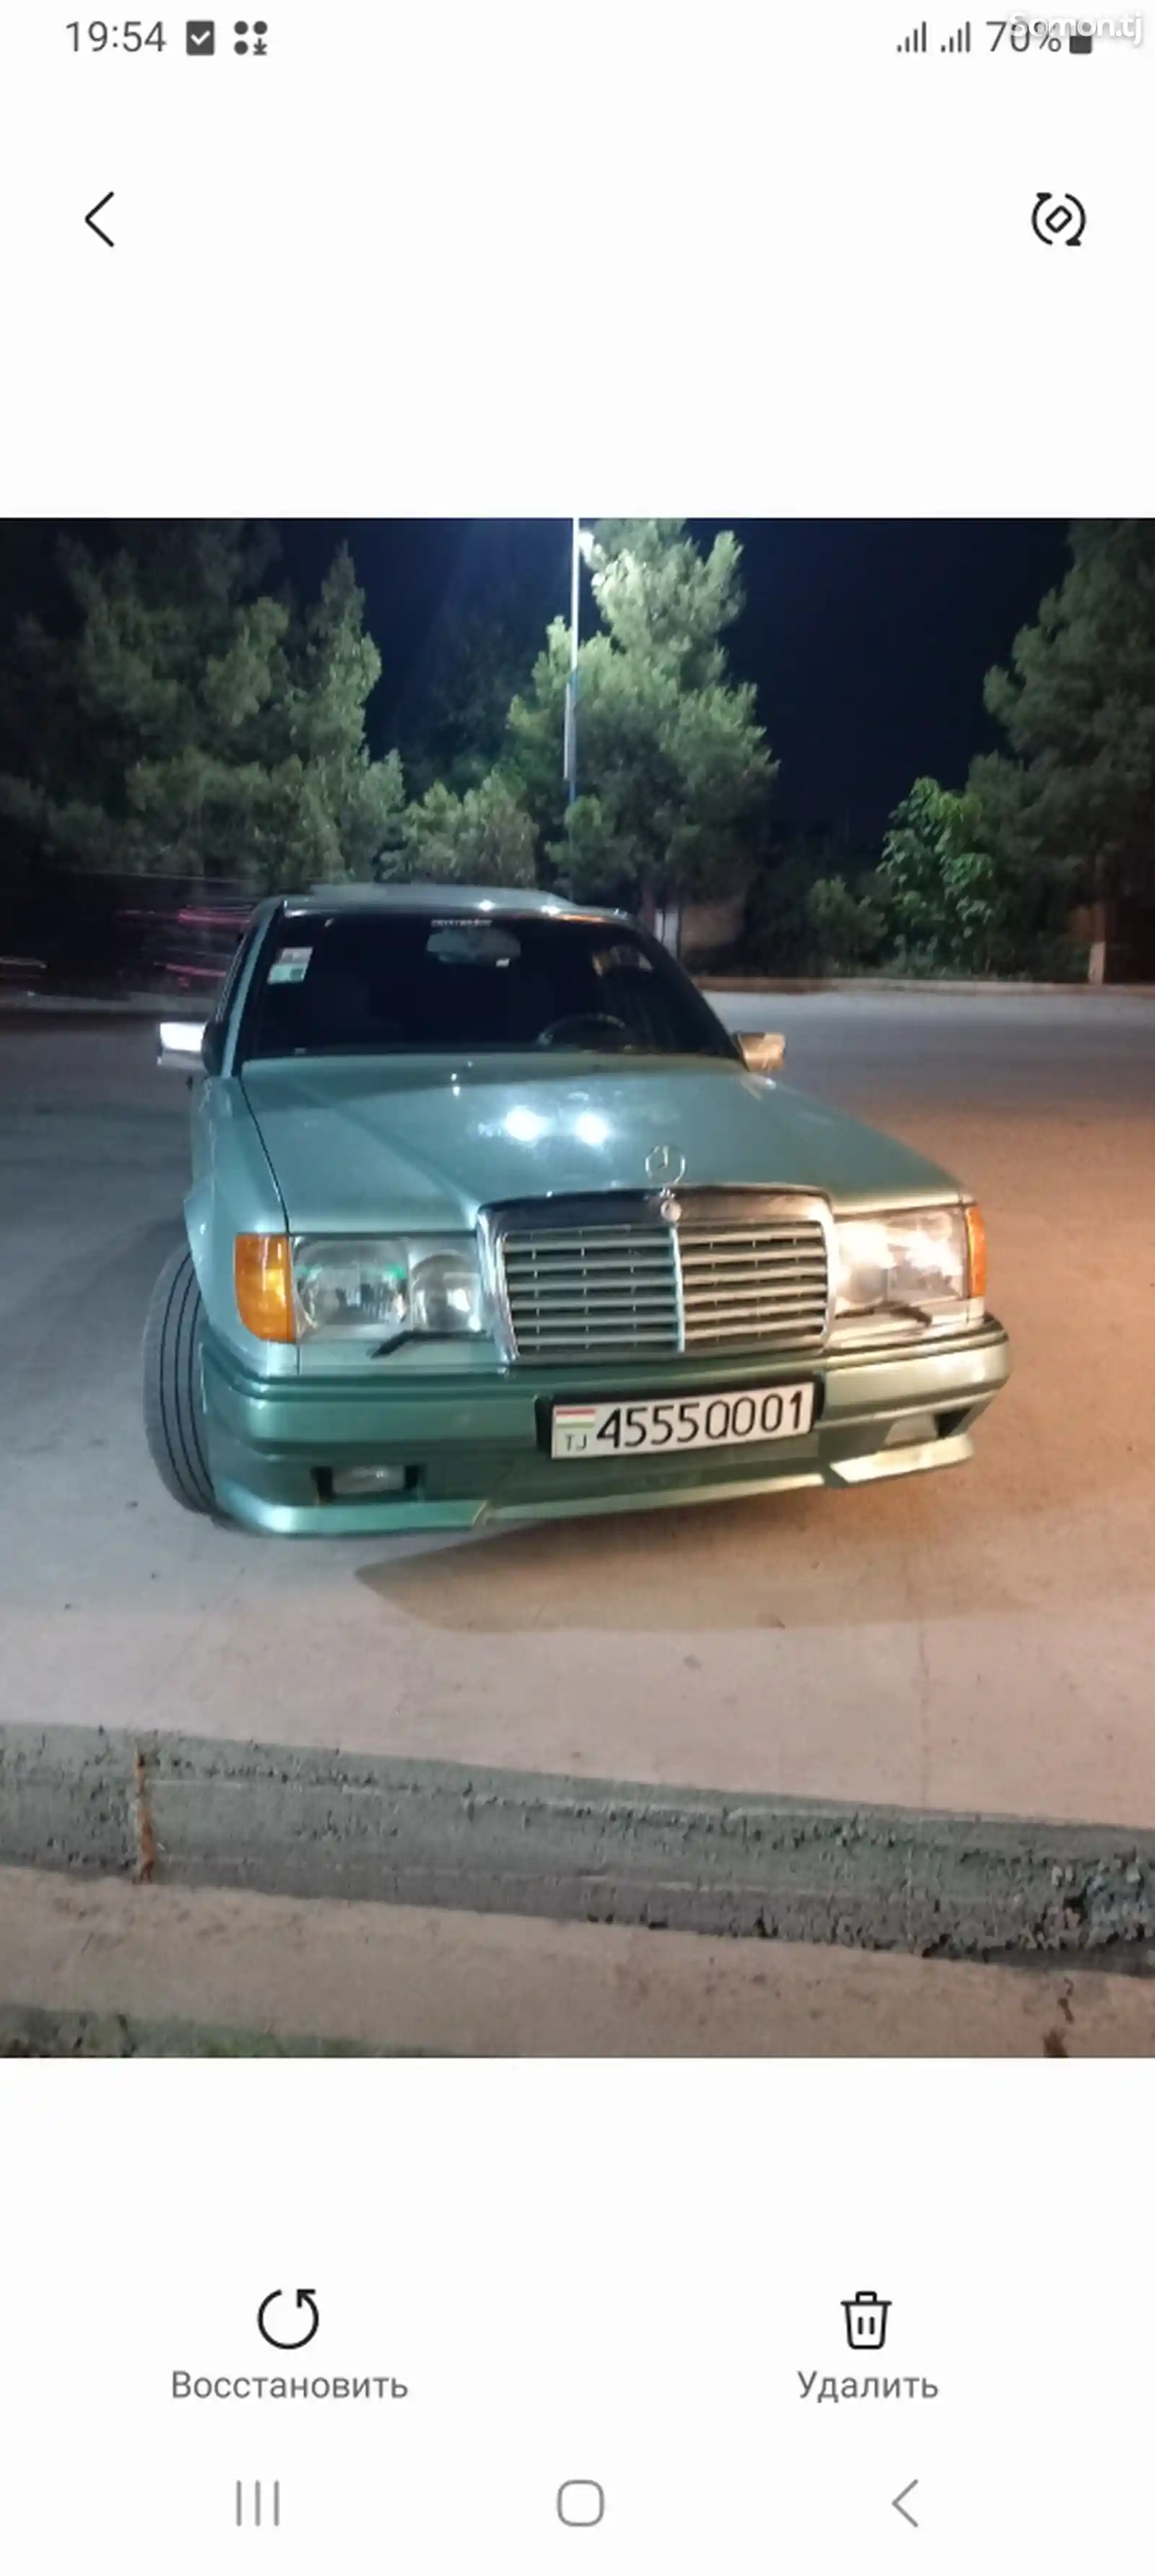 Mercedes-Benz W124, 1993-3